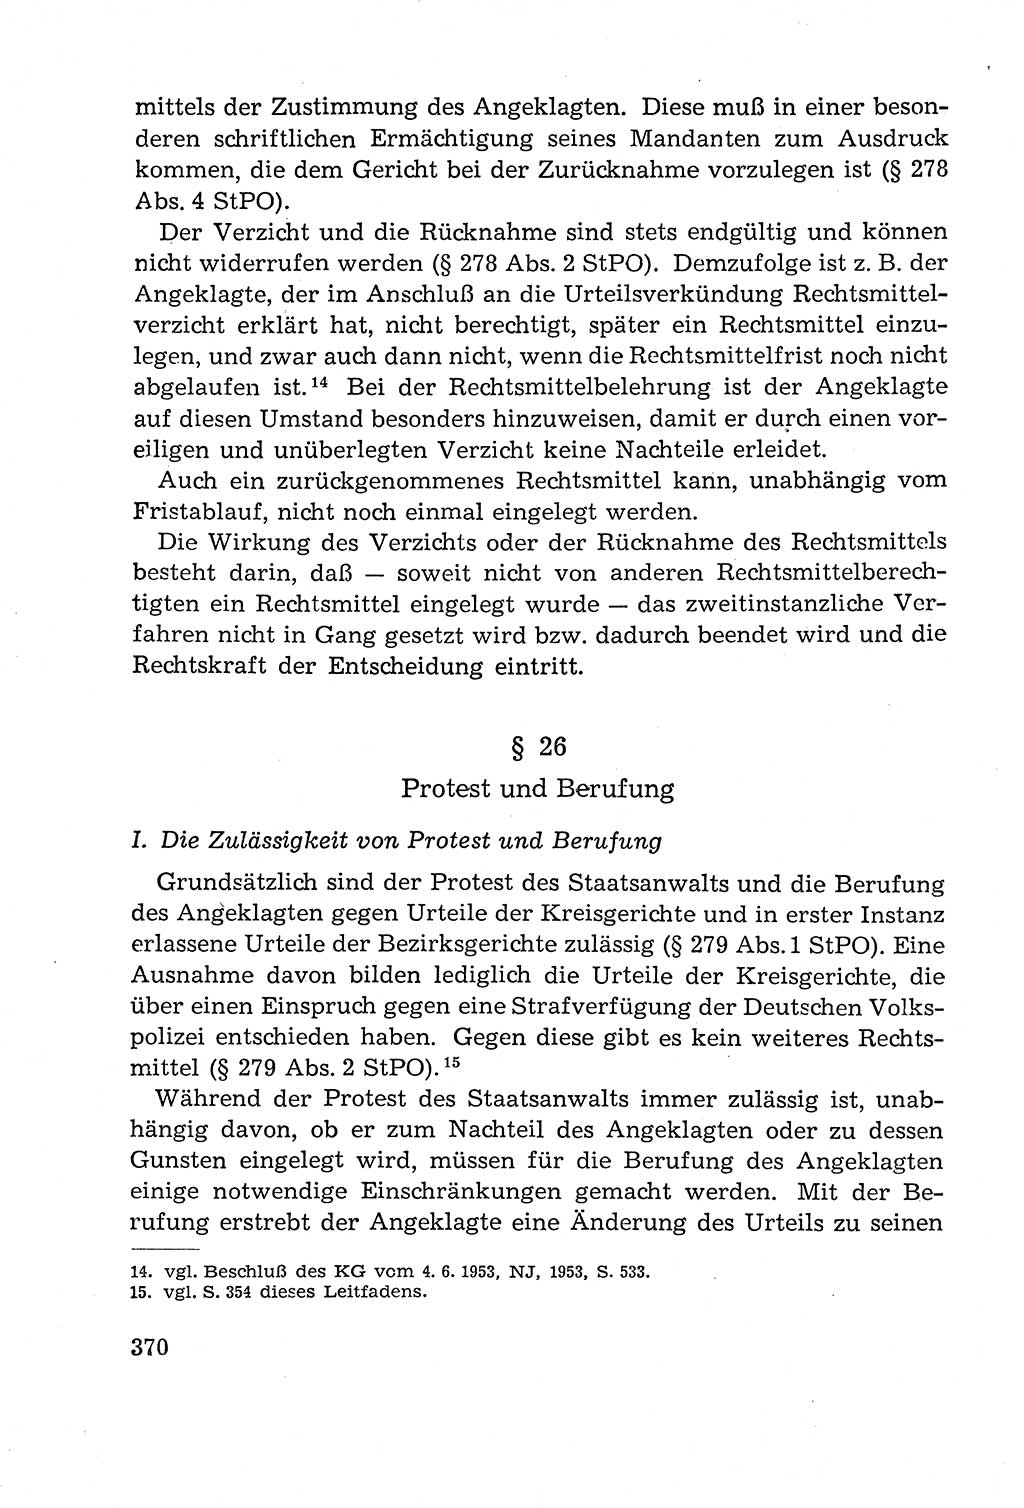 Leitfaden des Strafprozeßrechts der Deutschen Demokratischen Republik (DDR) 1959, Seite 370 (LF StPR DDR 1959, S. 370)